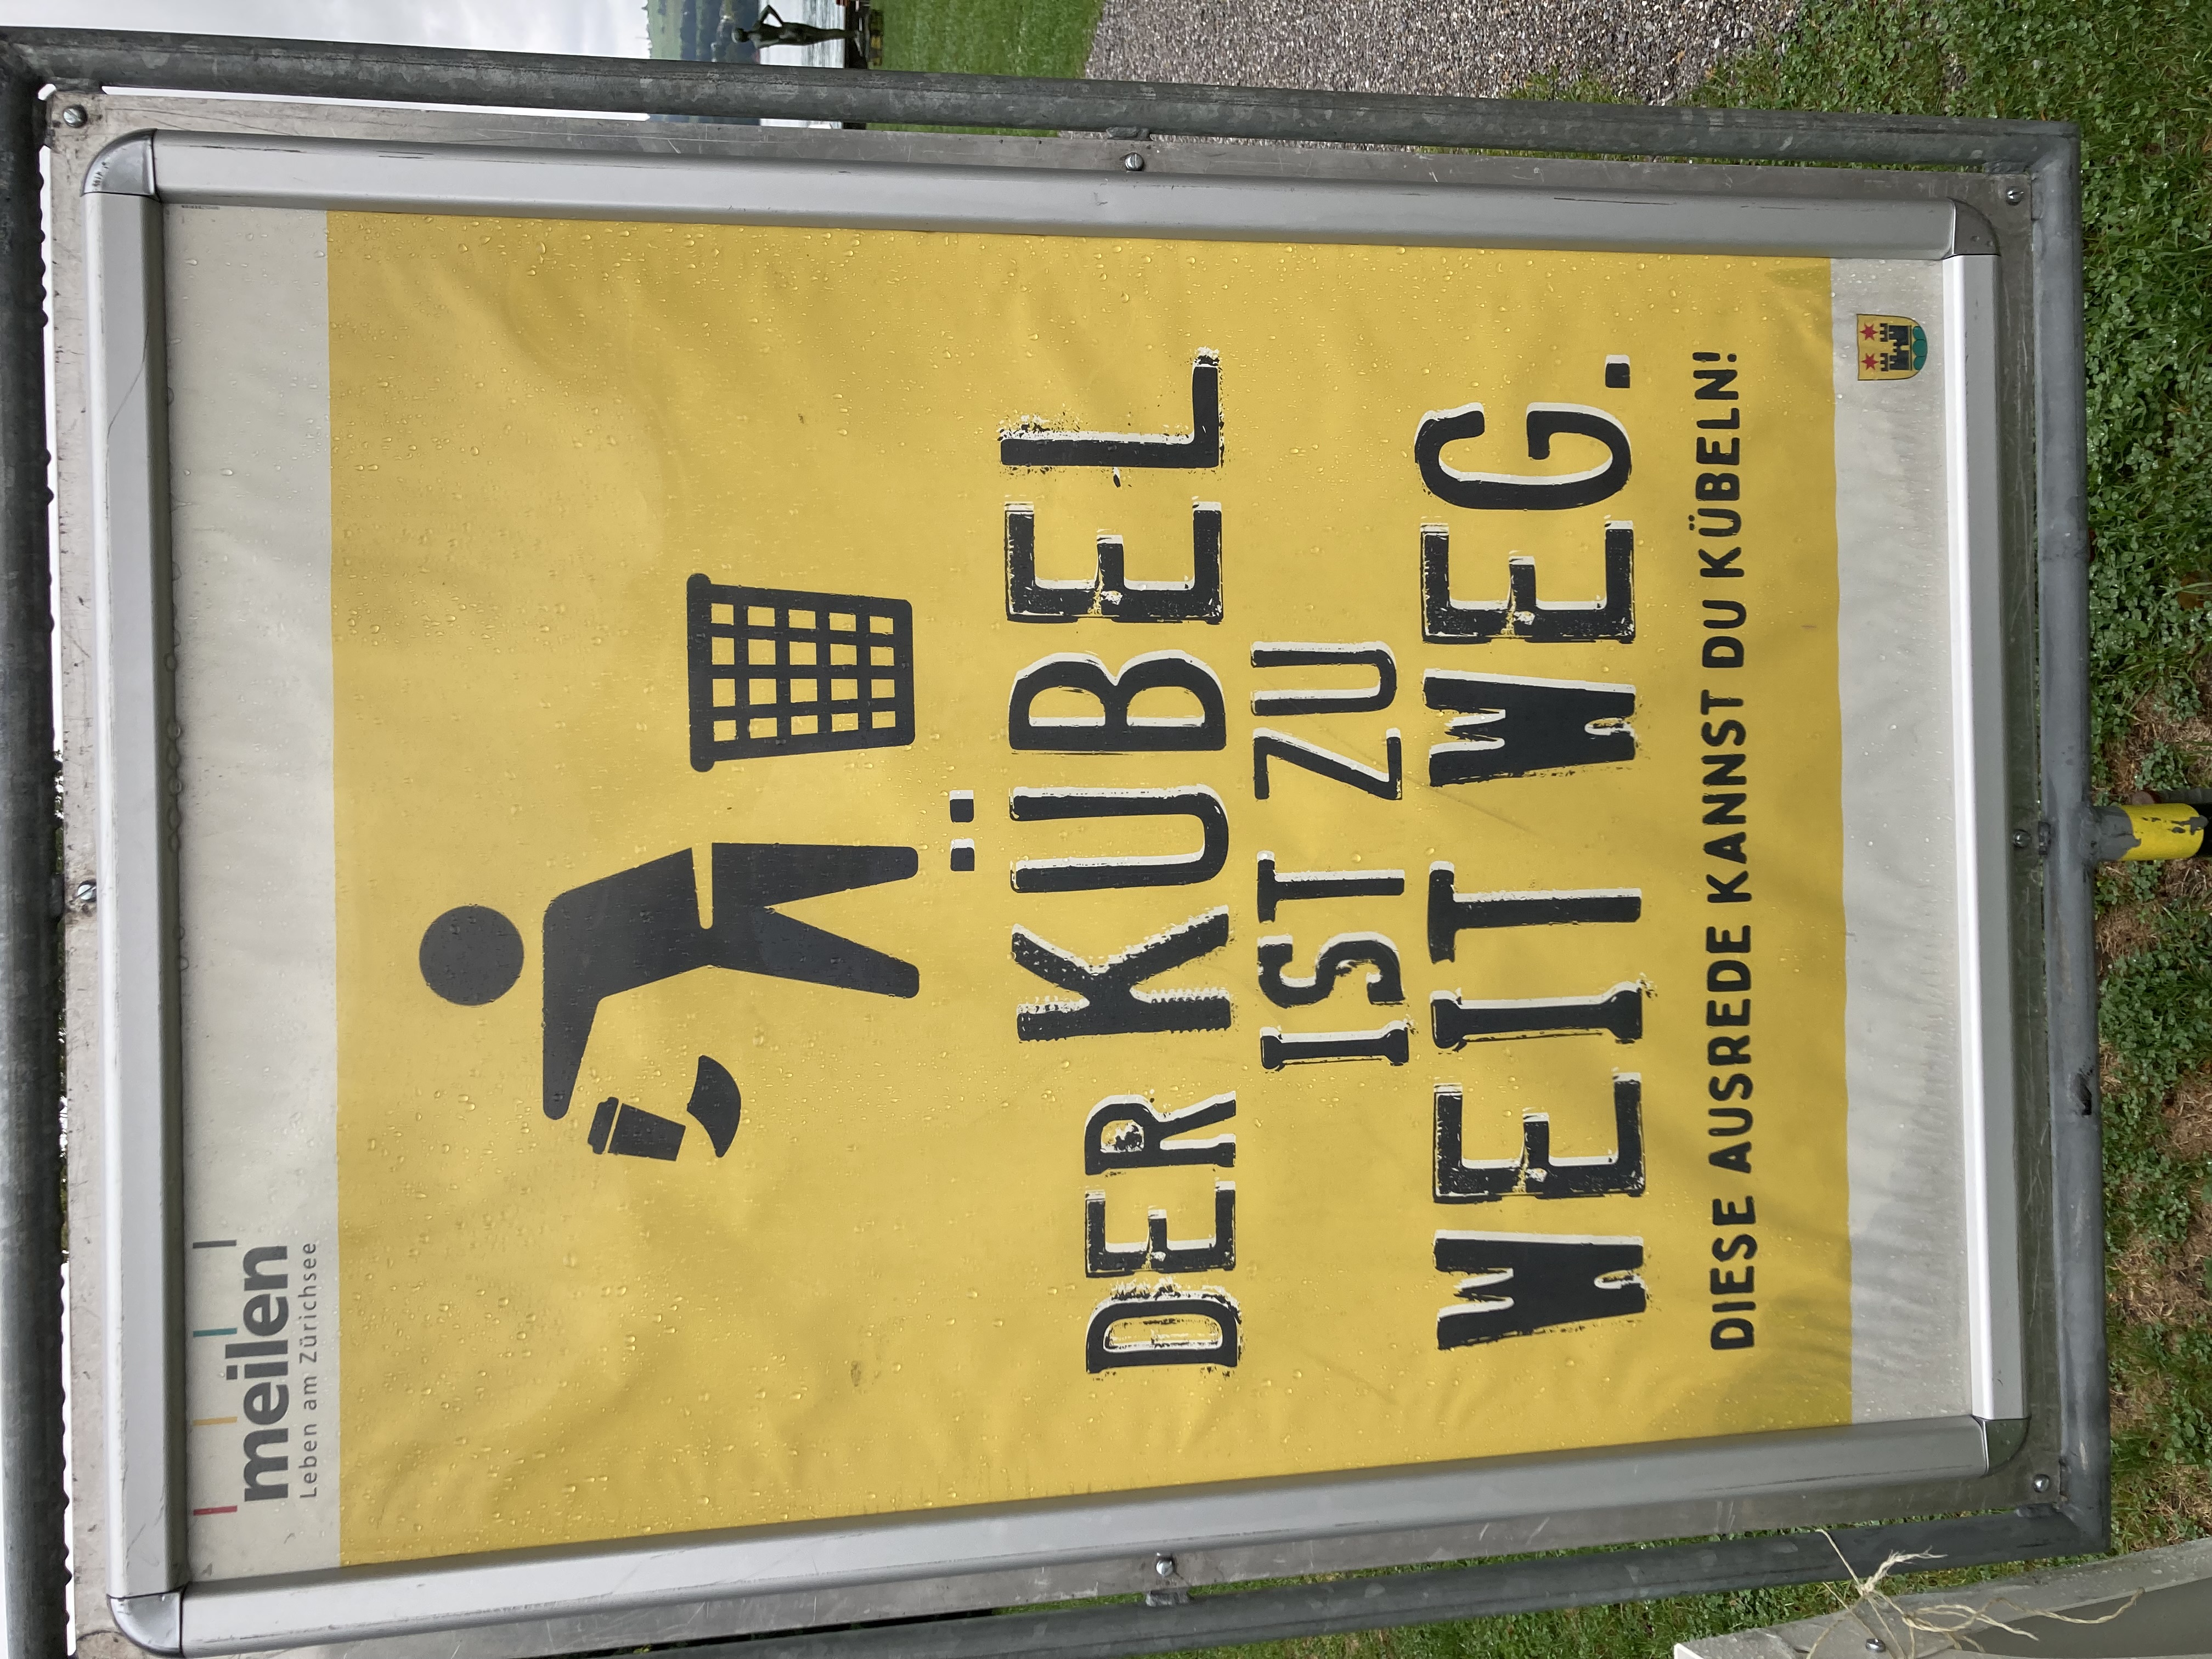 Littering-Kampagne der Gemeinde Meilen zugunsten des Abfallbehälters. Slogan auf Plakat: „DER KÜBEL IST ZU WEIT WEG, diese Ausrede kannst Du kübeln!“